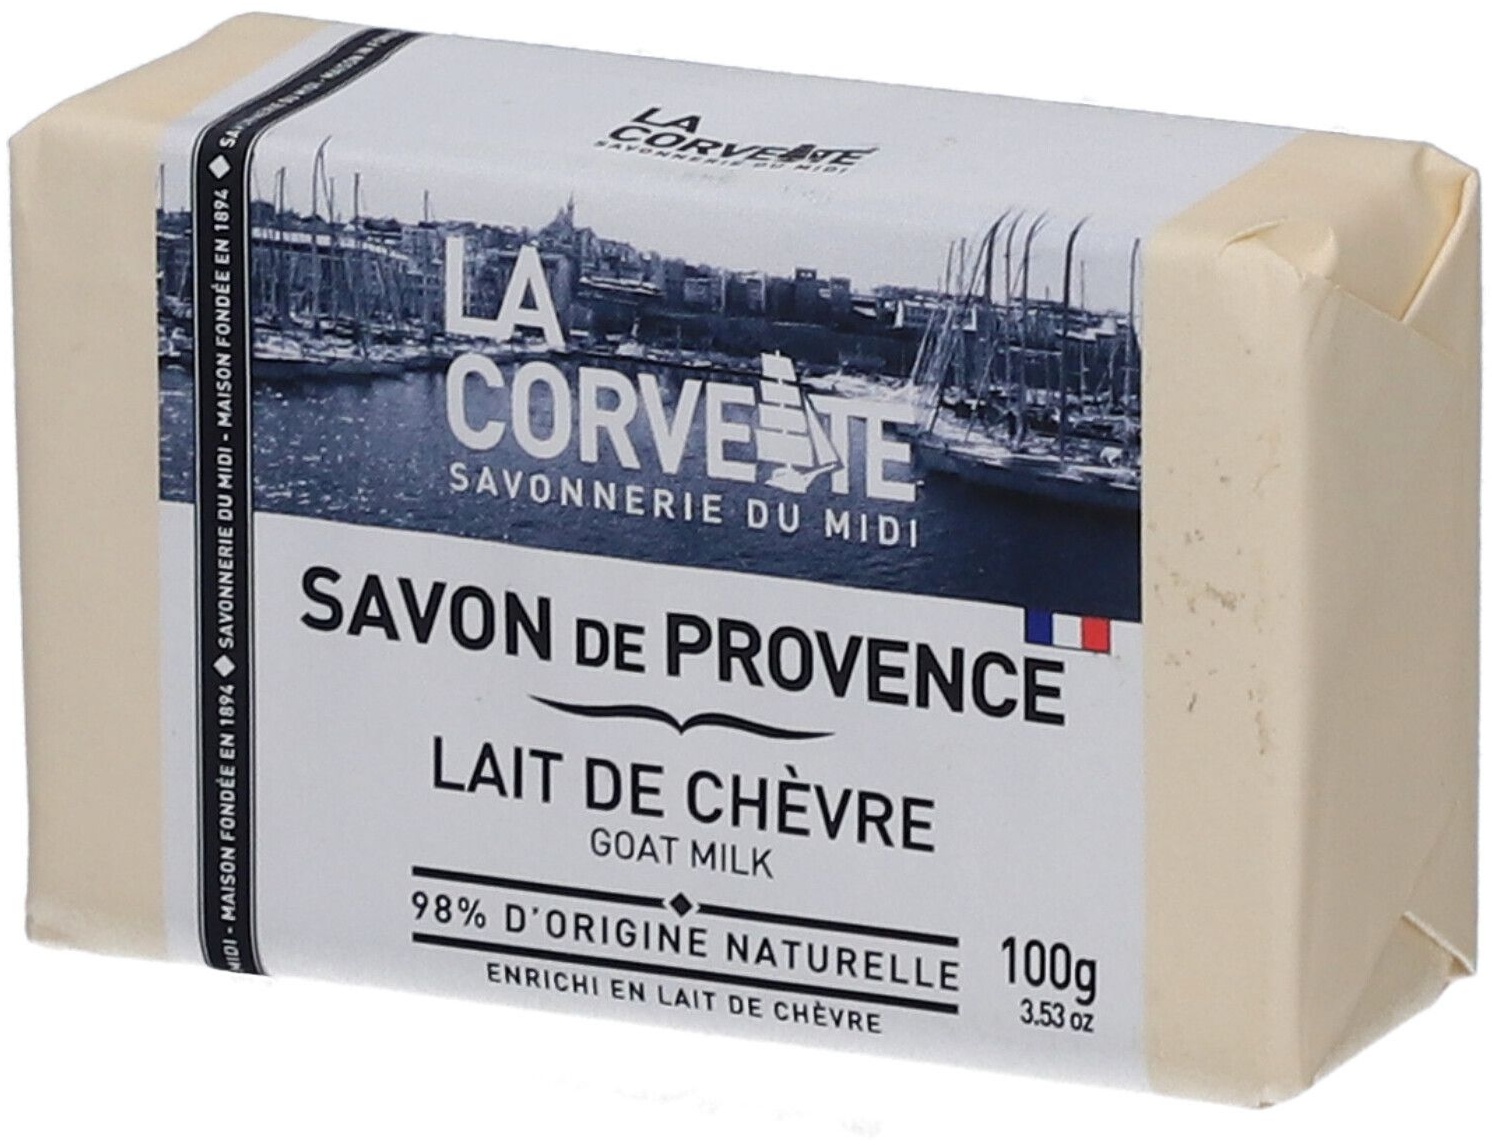 LA CORVETTE Savon de Provence Lait de chèvre 100 g savon